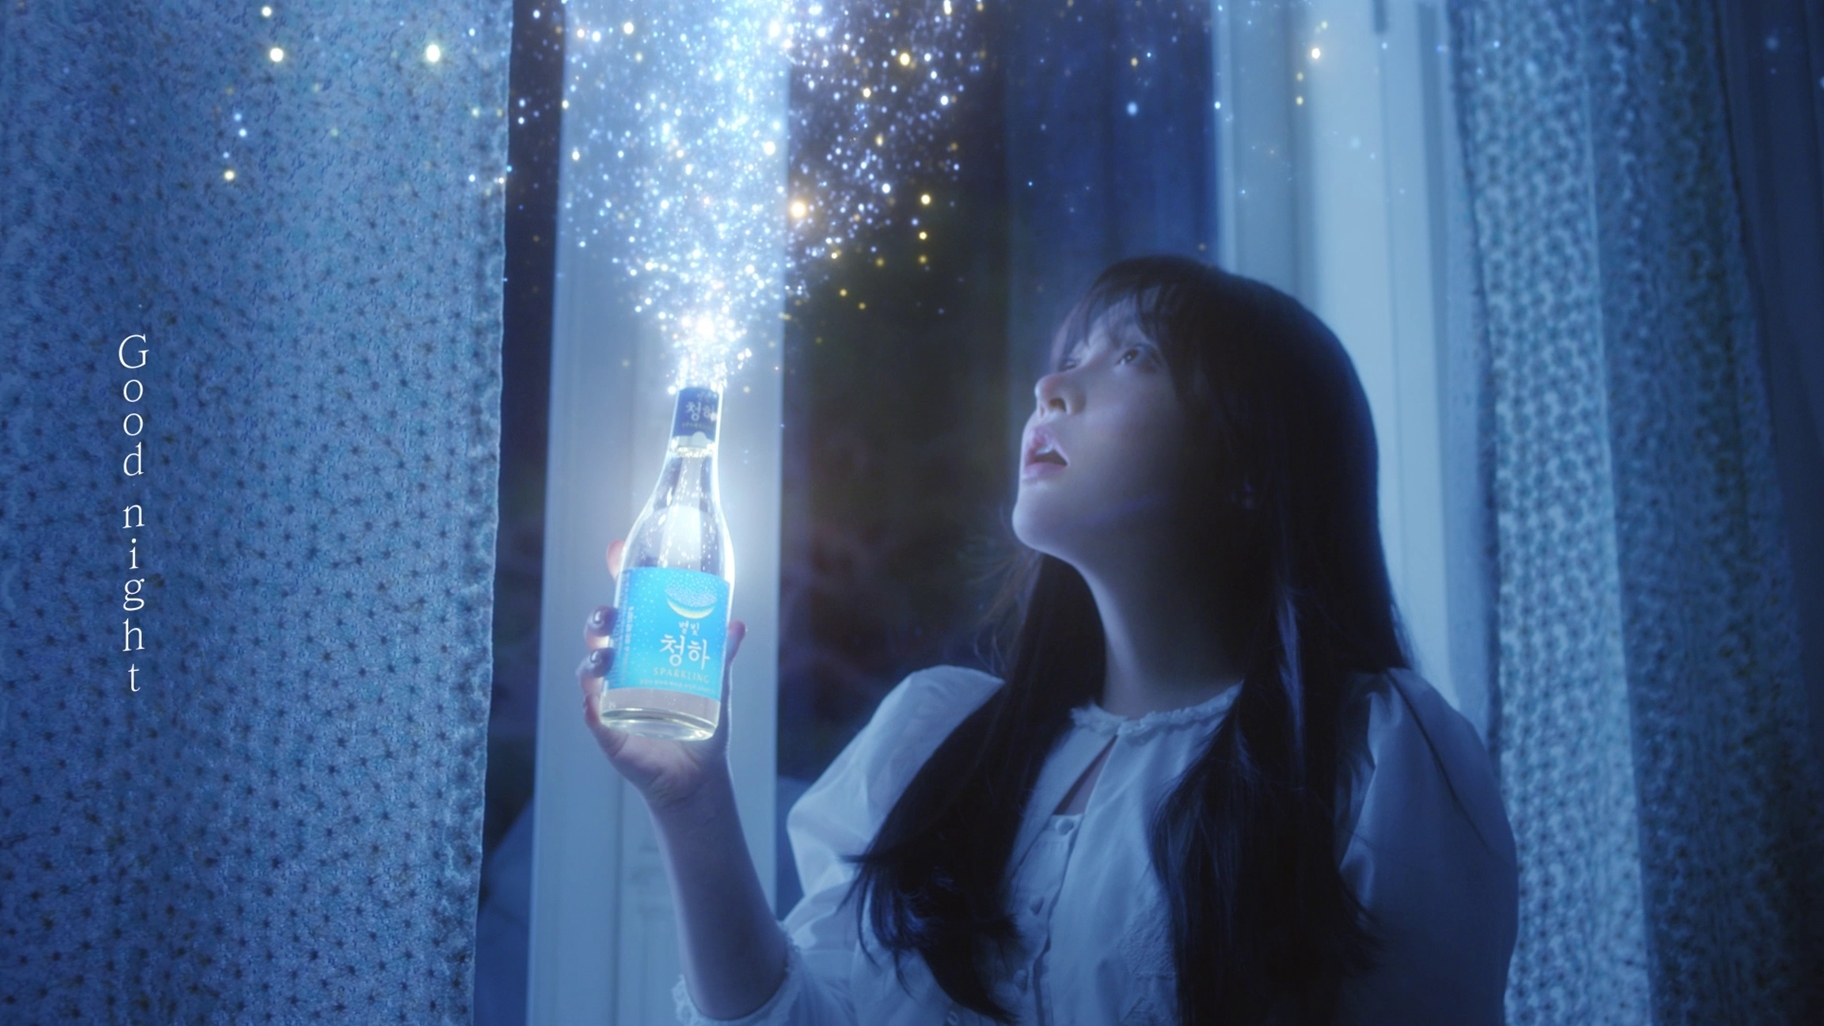 롯데칠성음료 ‘별빛청하 스파클링’ 신규 광고 공개